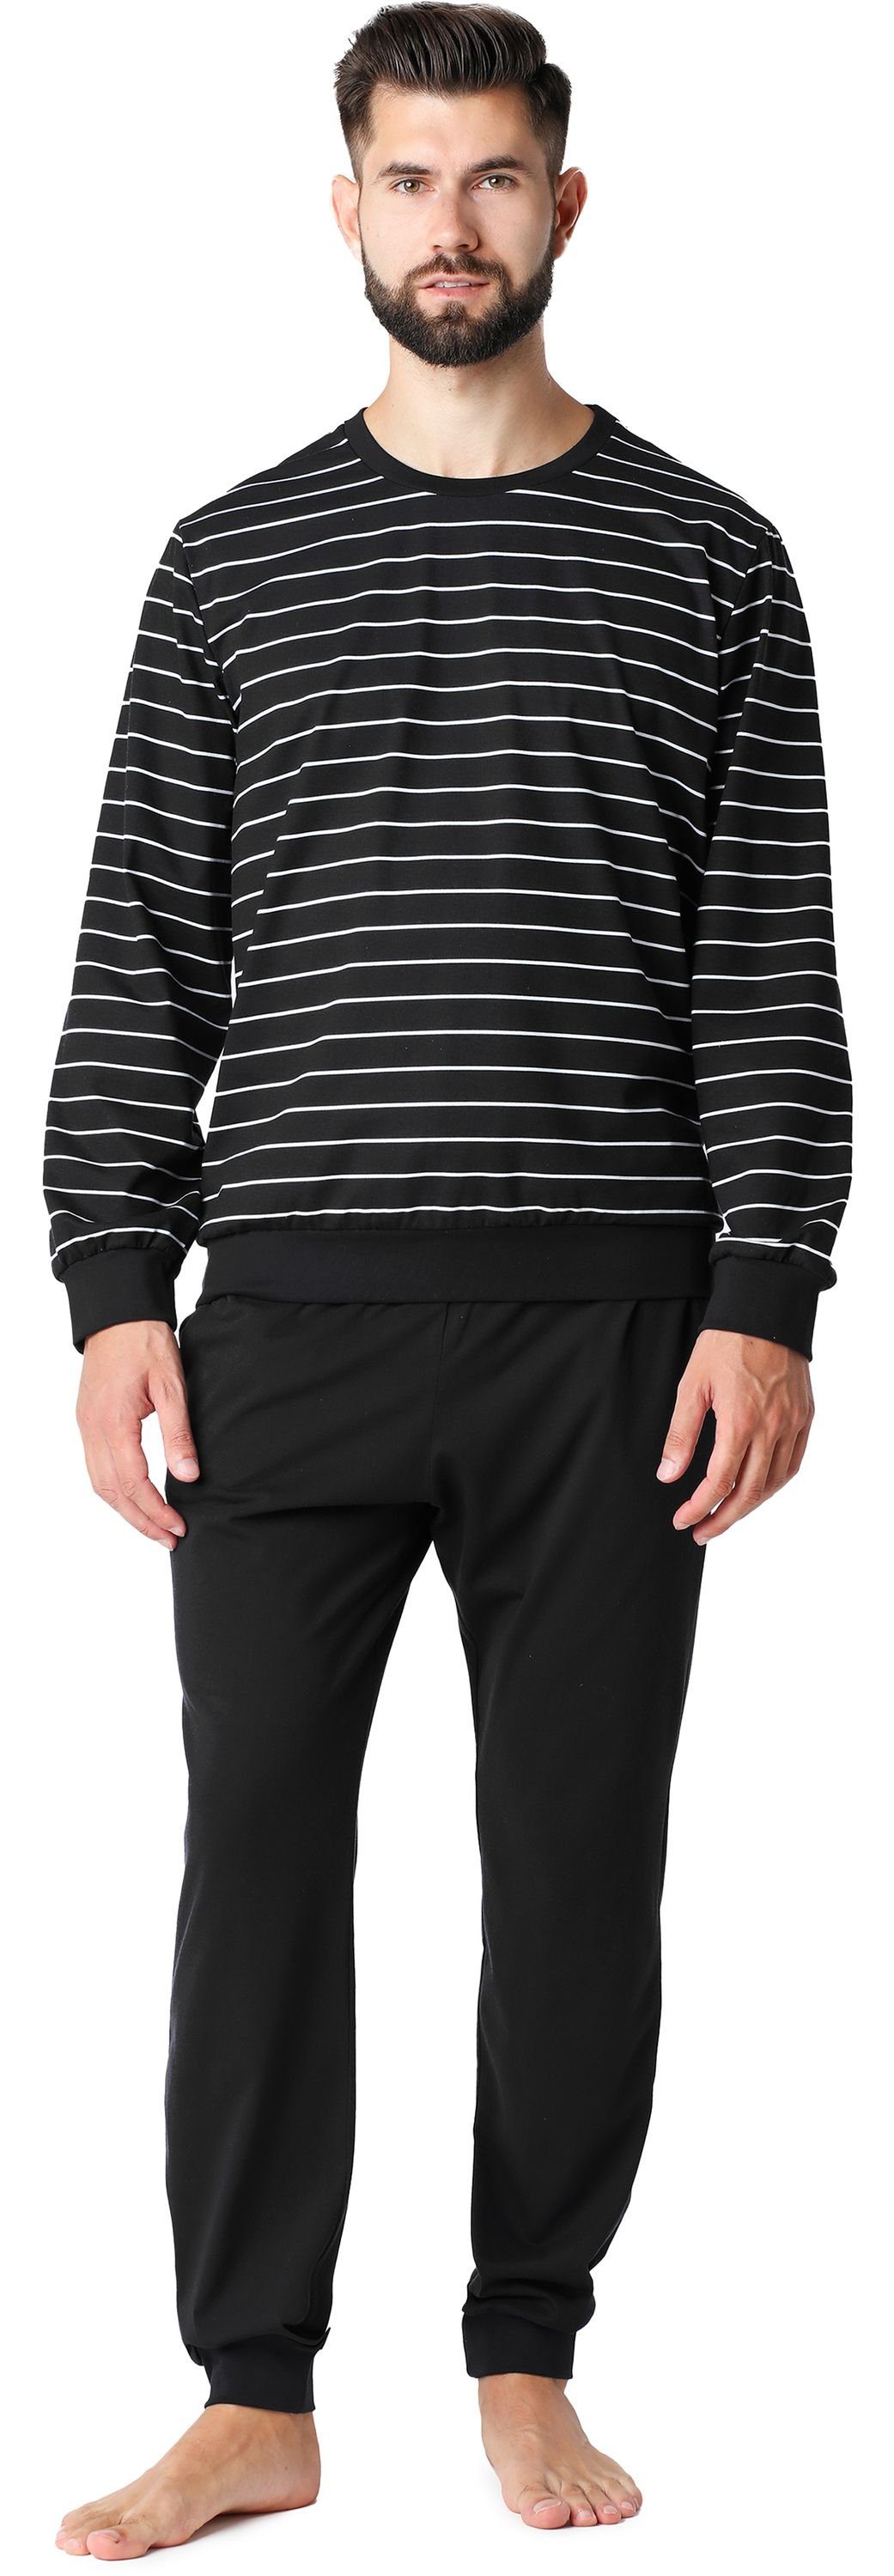 Ladeheid Schlafanzug Herren Schlafanzug aus Baumwolle LA40-228 Schwarz Weiß